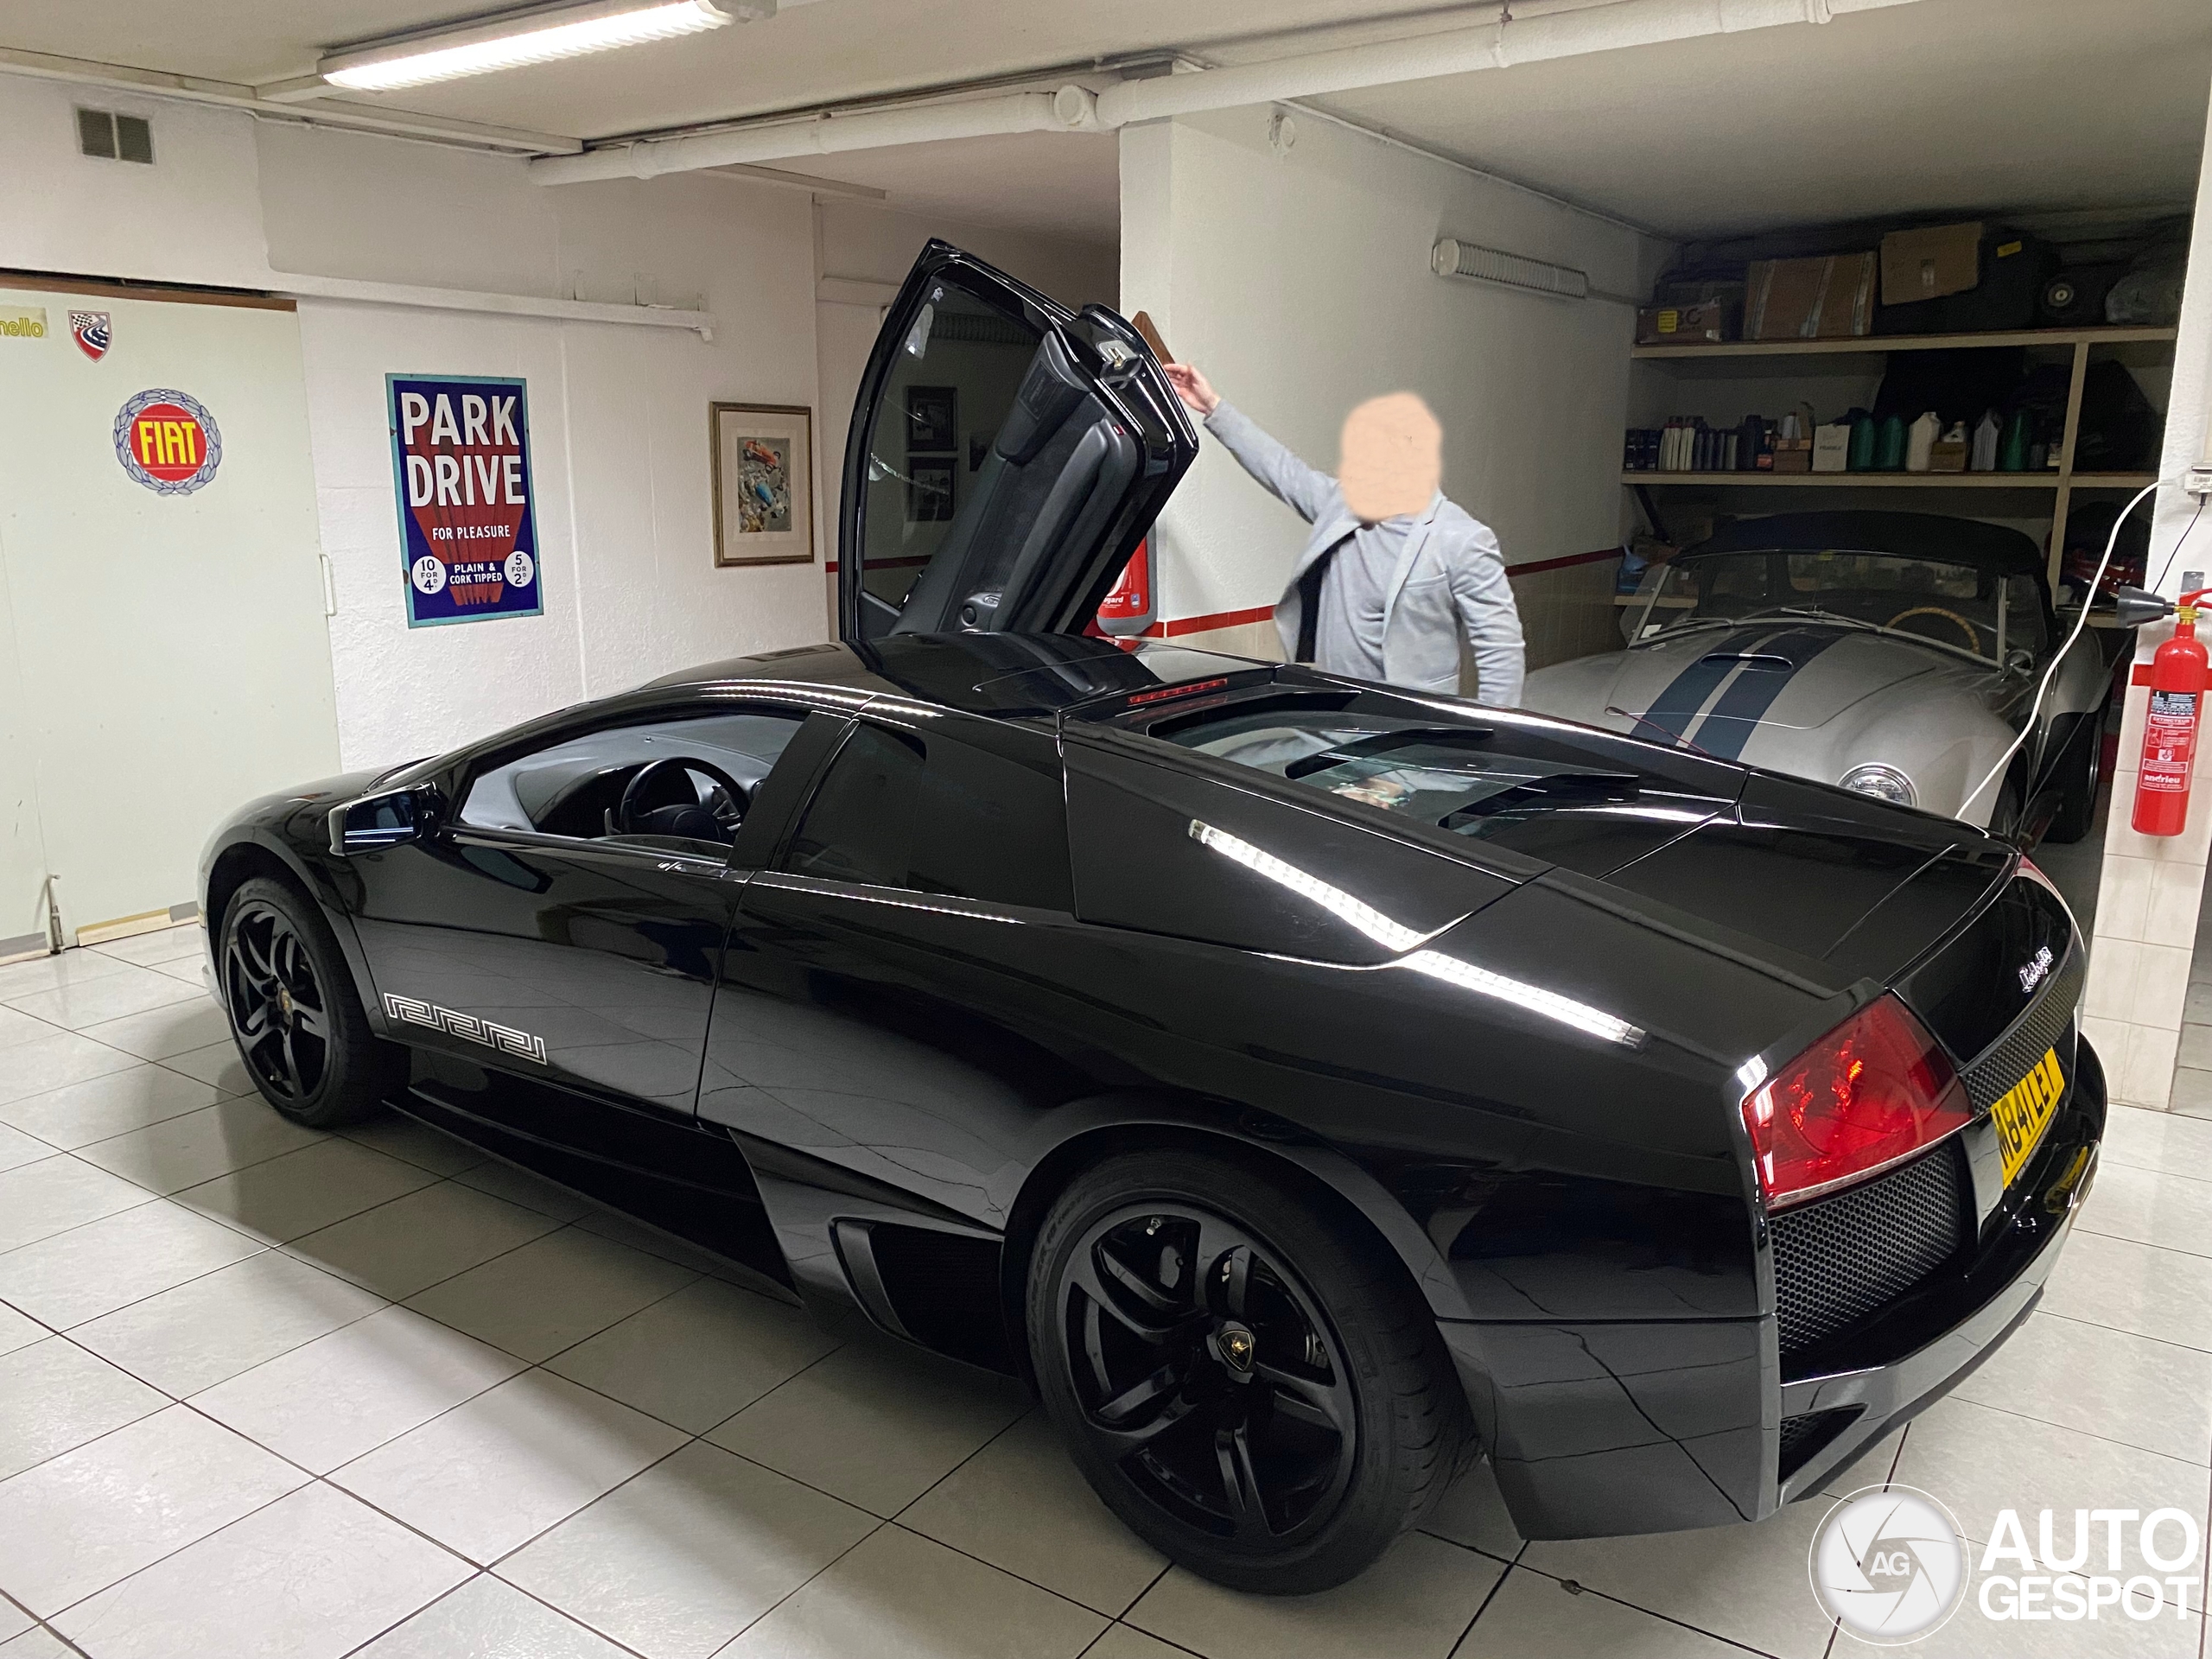 Lamborghini met extra Italiaanse shine